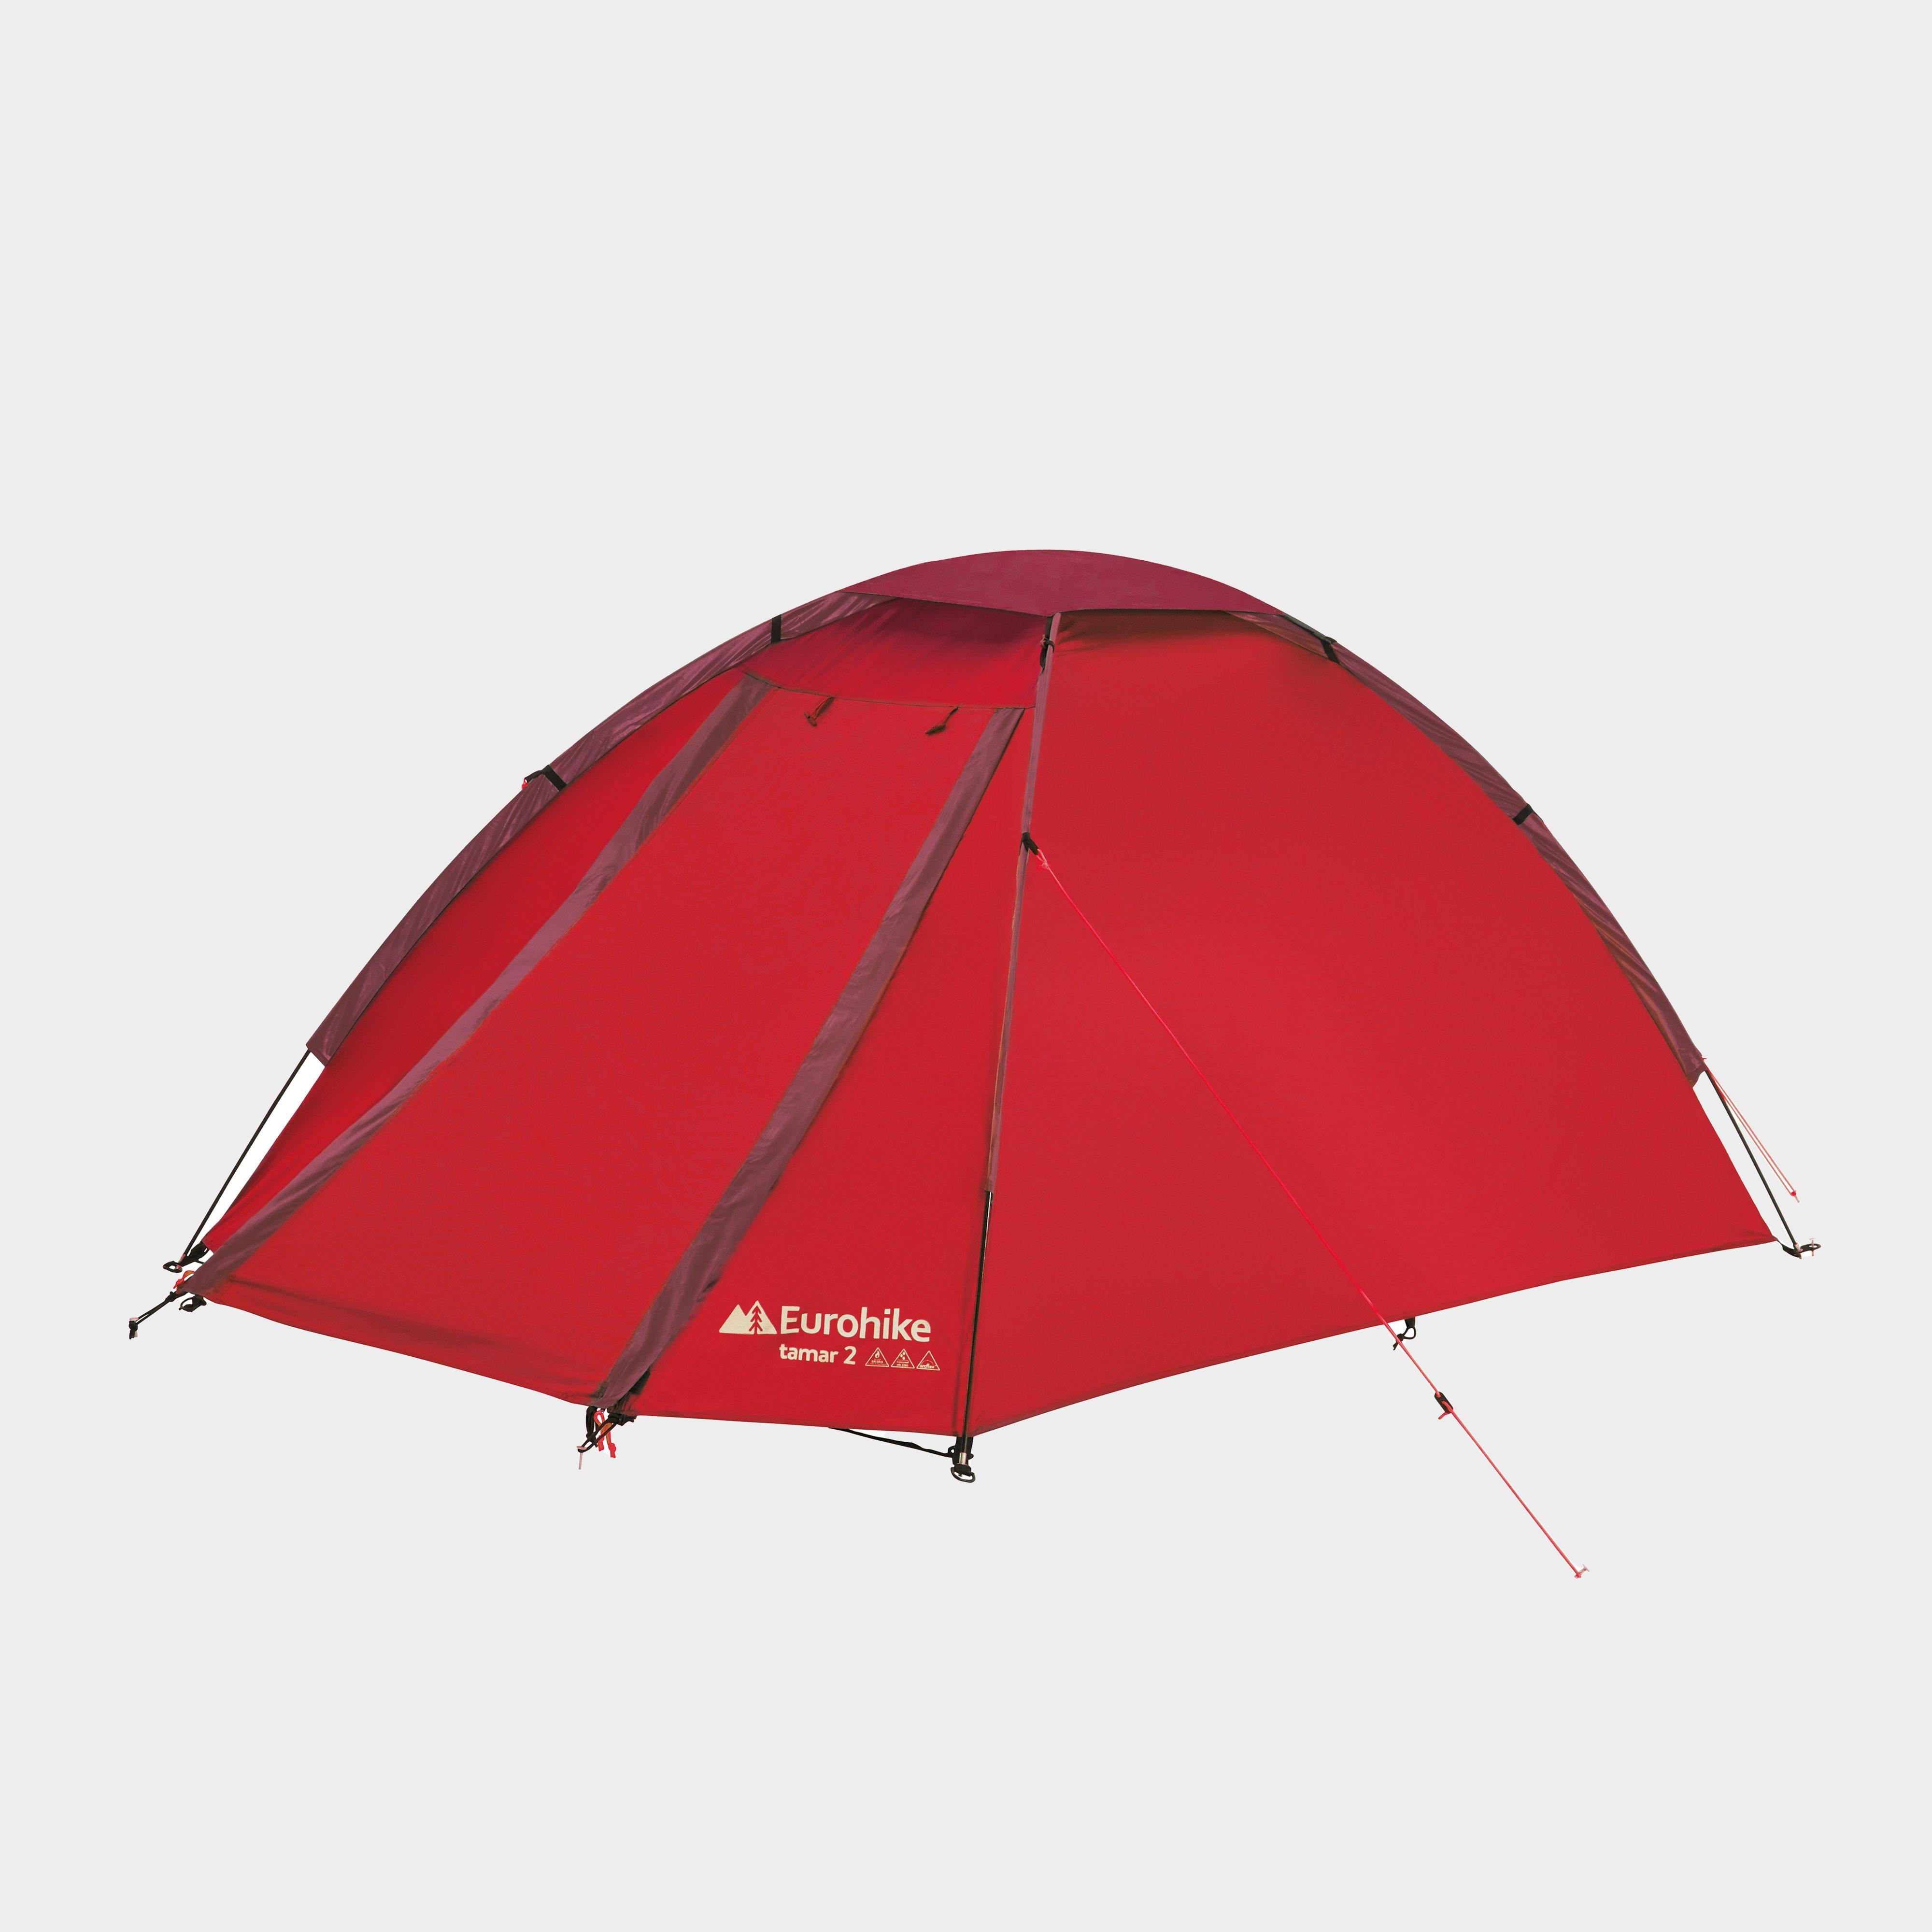 Eurohike Eurohike Tamar 2 Tent - Red, Red